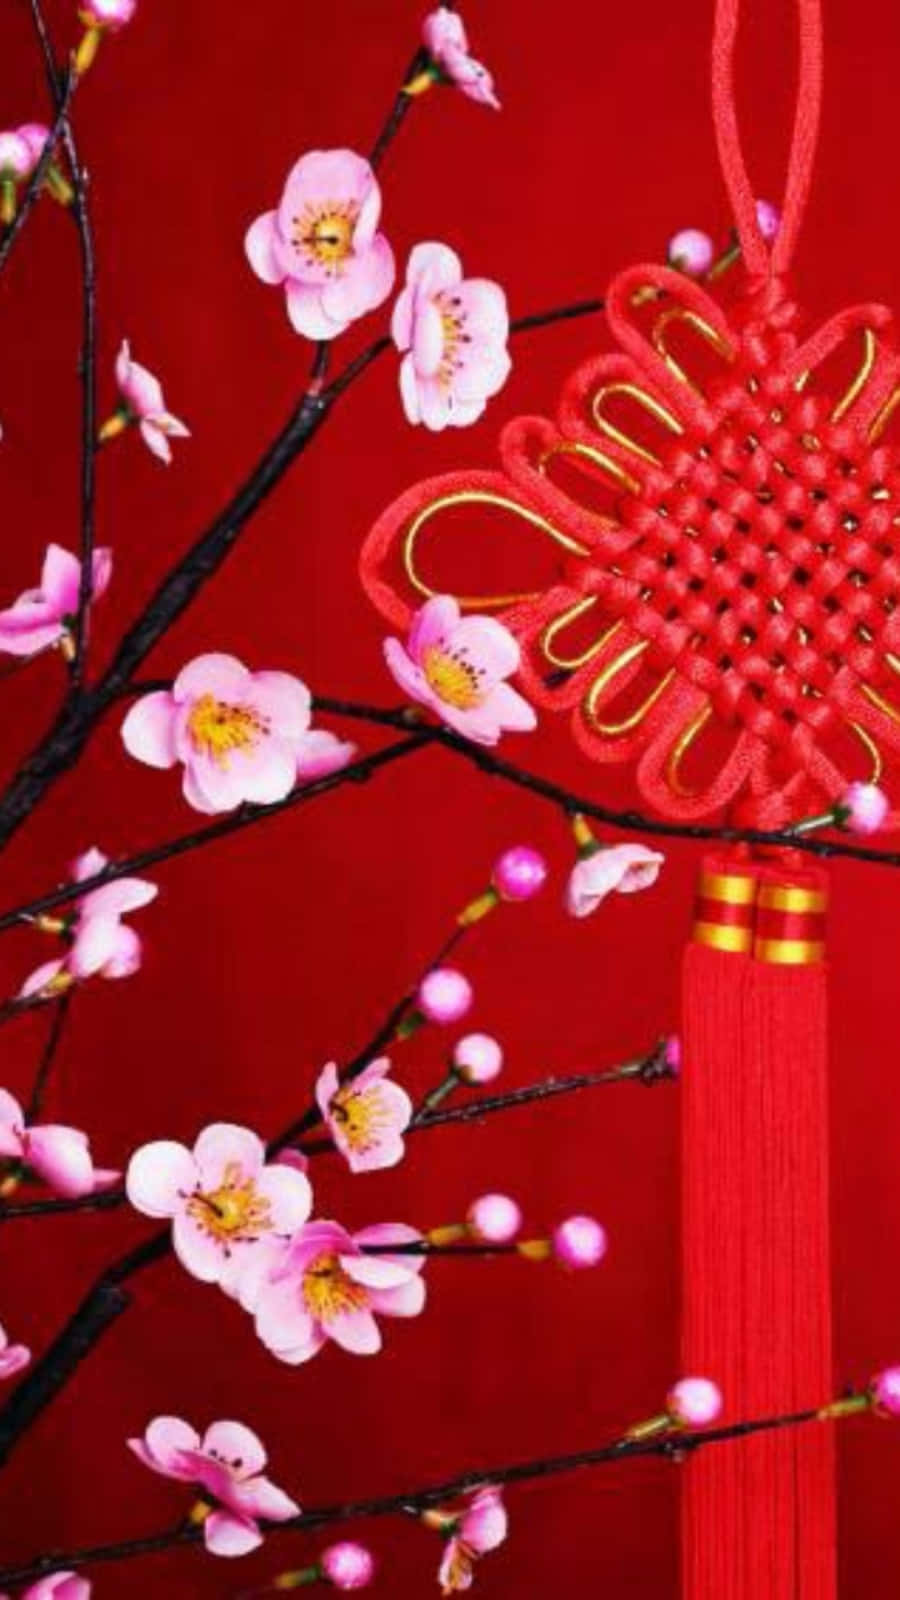 Machensie Sich Bereit, Das Chinesische Neujahr Mit Dem Iphone Zu Feiern. Wallpaper